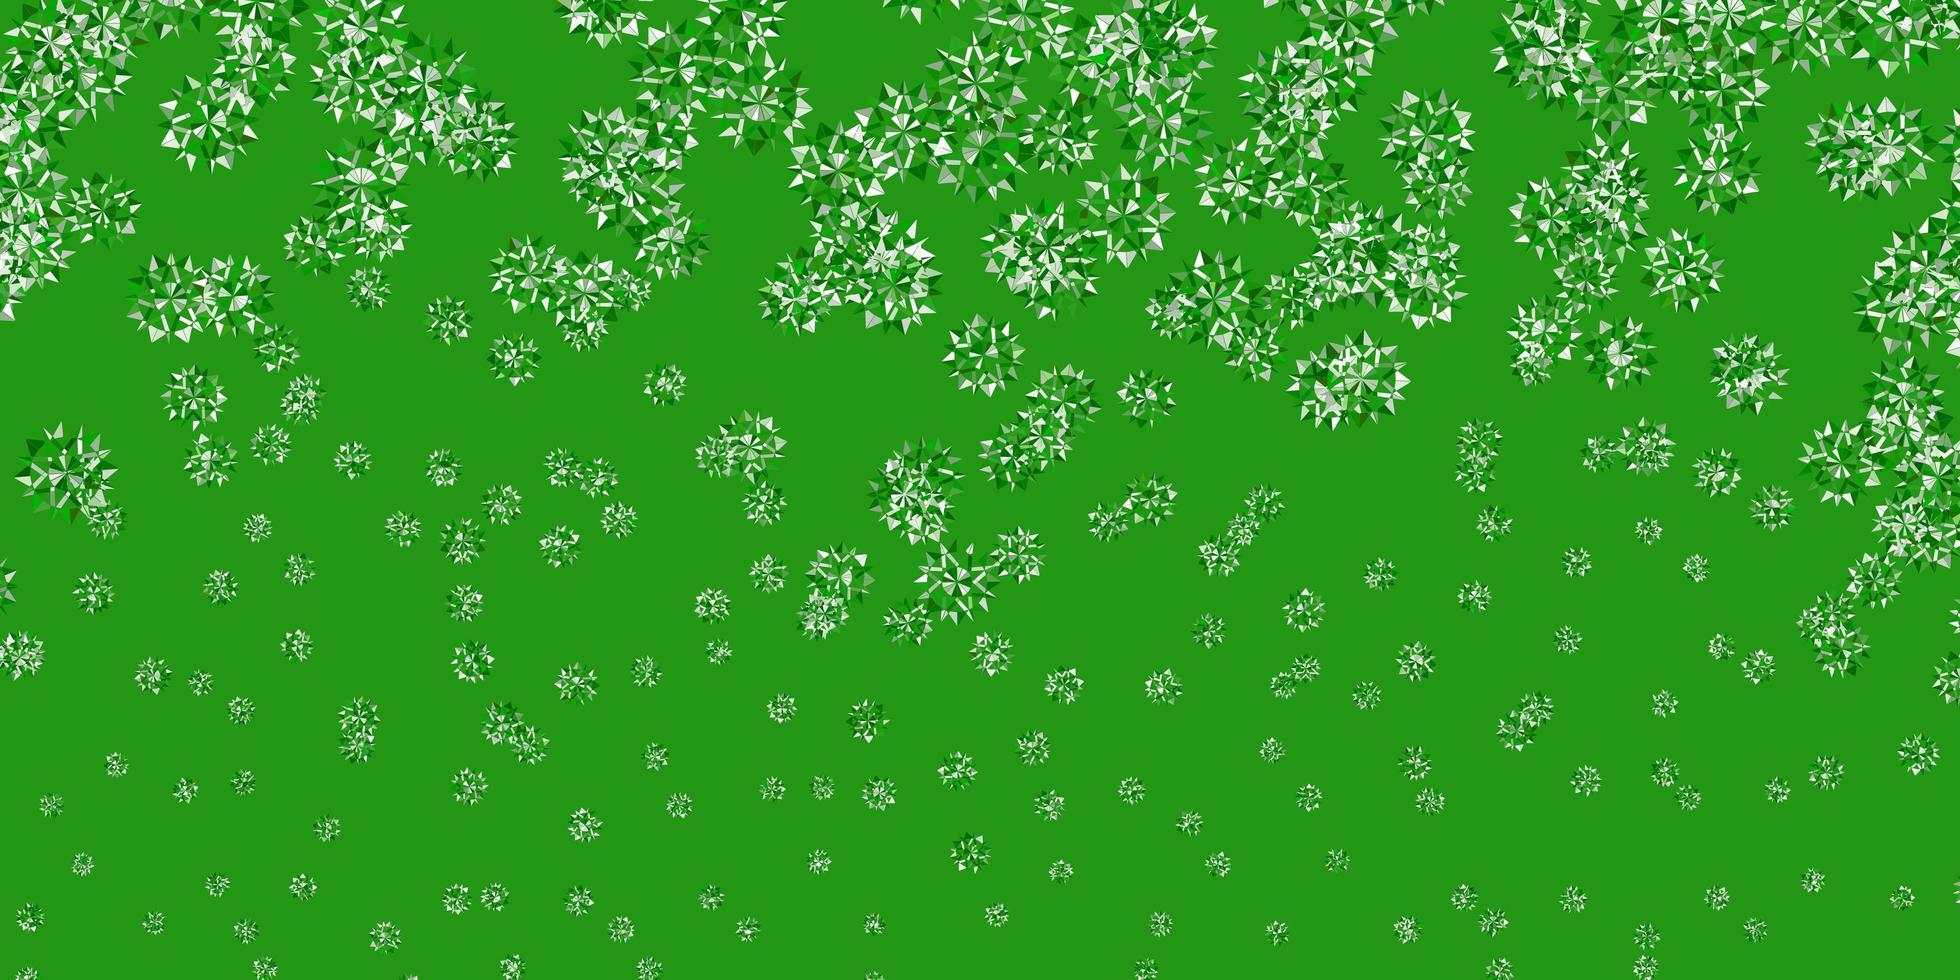 ljusgrönt vektormönster med färgade snöflingor. vektor